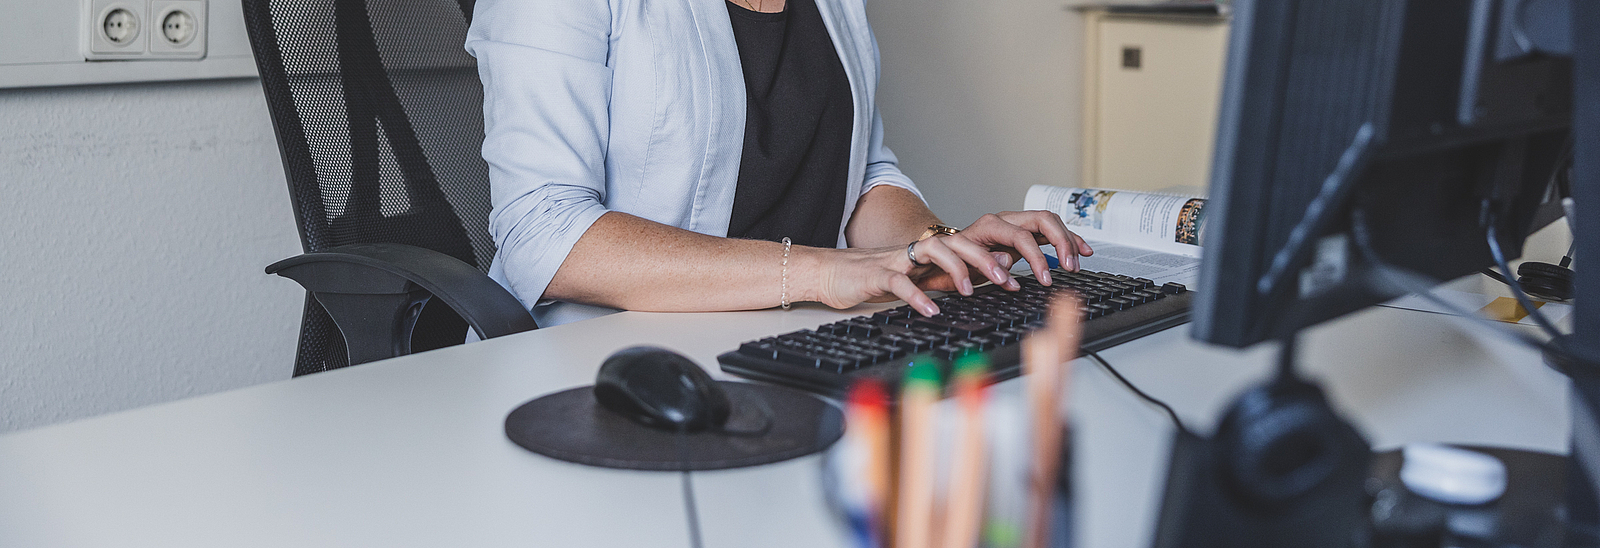 Eine Frau sitzt vor einem Computer und tippt auf eine Tastatur.